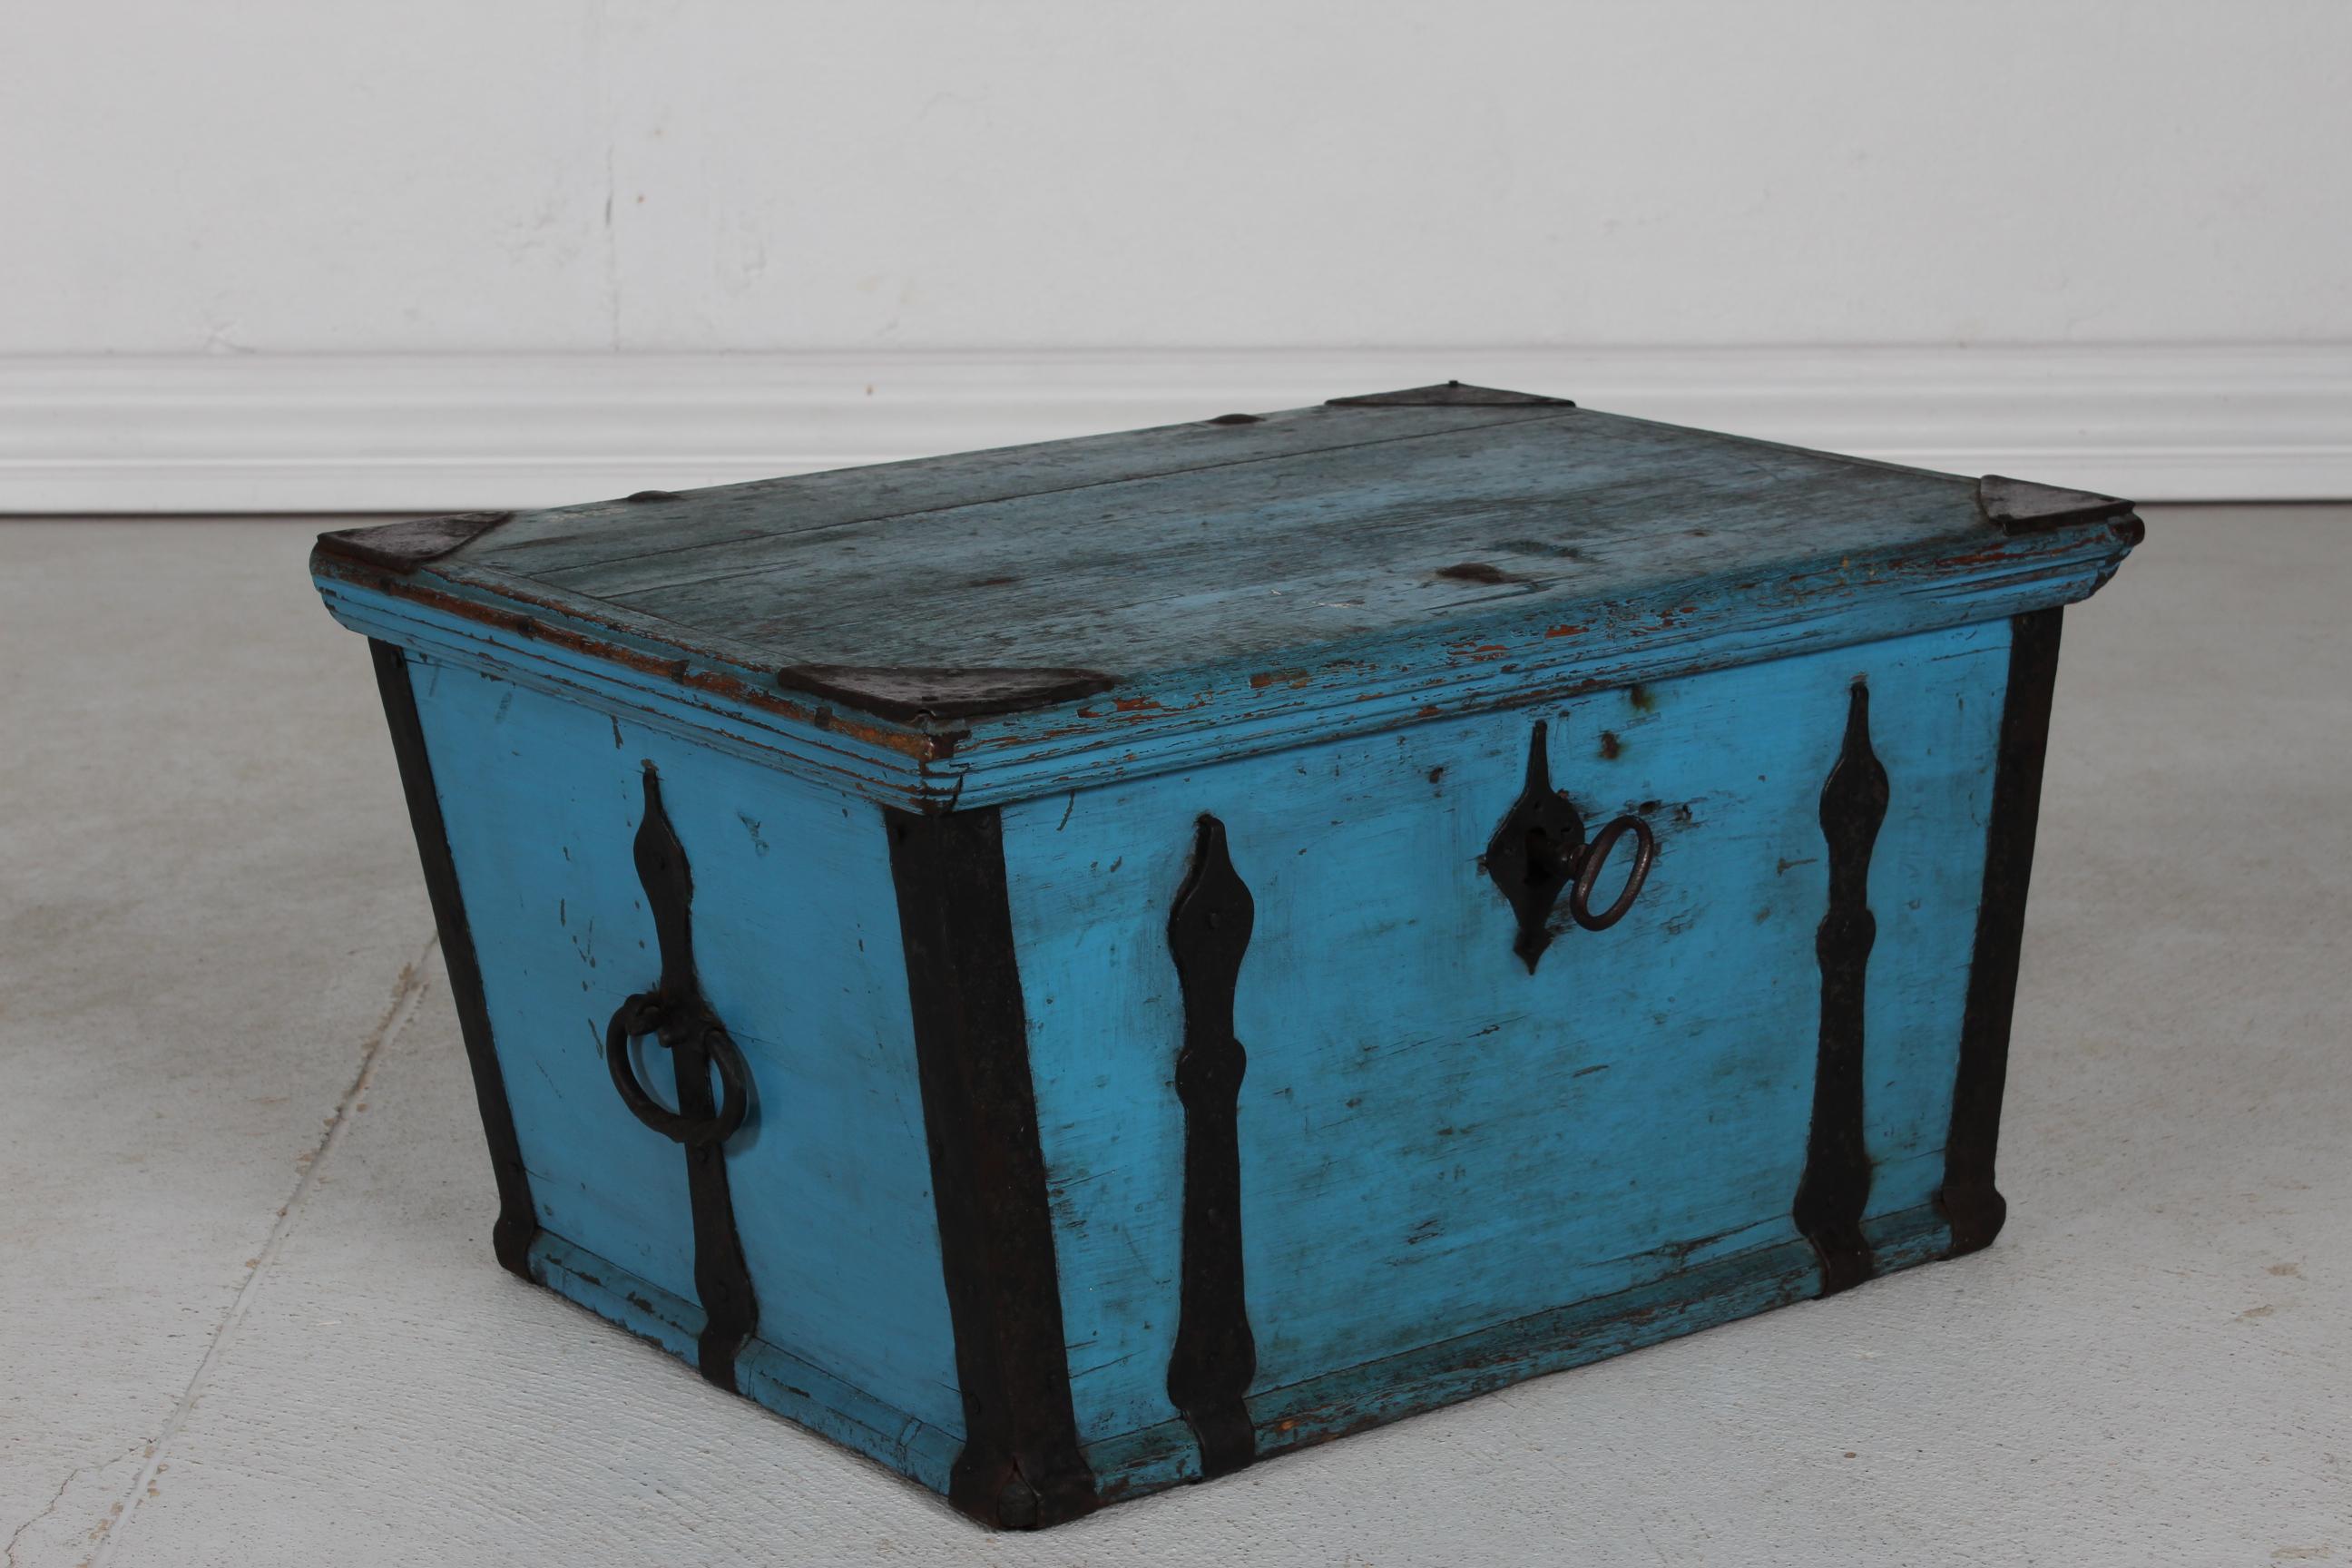 Antike schwedische Kampagnentruhe/Aufbewahrungsbox mit glattem Deckel - kann als kleiner Tisch verwendet werden.
Es ist  aus Kiefernholz mit blauer Farbe patiniert nach Gebrauch und Alter.
Die Truhe hat einen flachen Deckel und Eisenbeschläge. Das